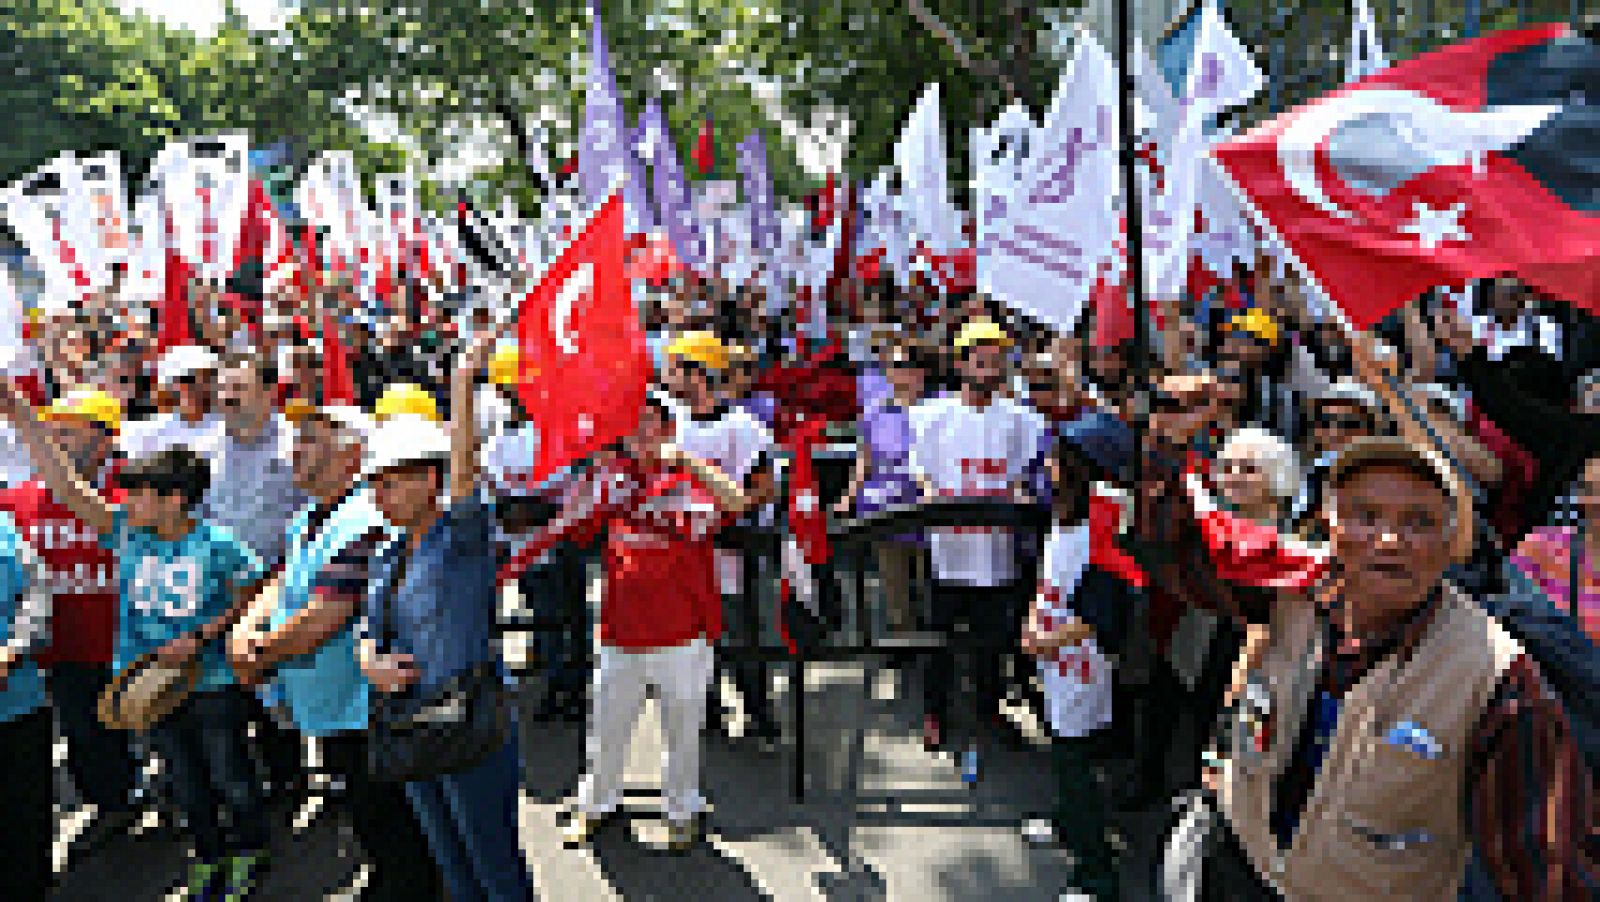  El derrumbamiento de una mina de carbón el día 13 de mayo en la localidad turca de Soma, no solo deja un abultado balance de víctimas -301 muertos es la cifra oficial-. El suceso ha puesto a la luz las duras condiciones a las que se enfrentan los mineros turcos en su trabajo.